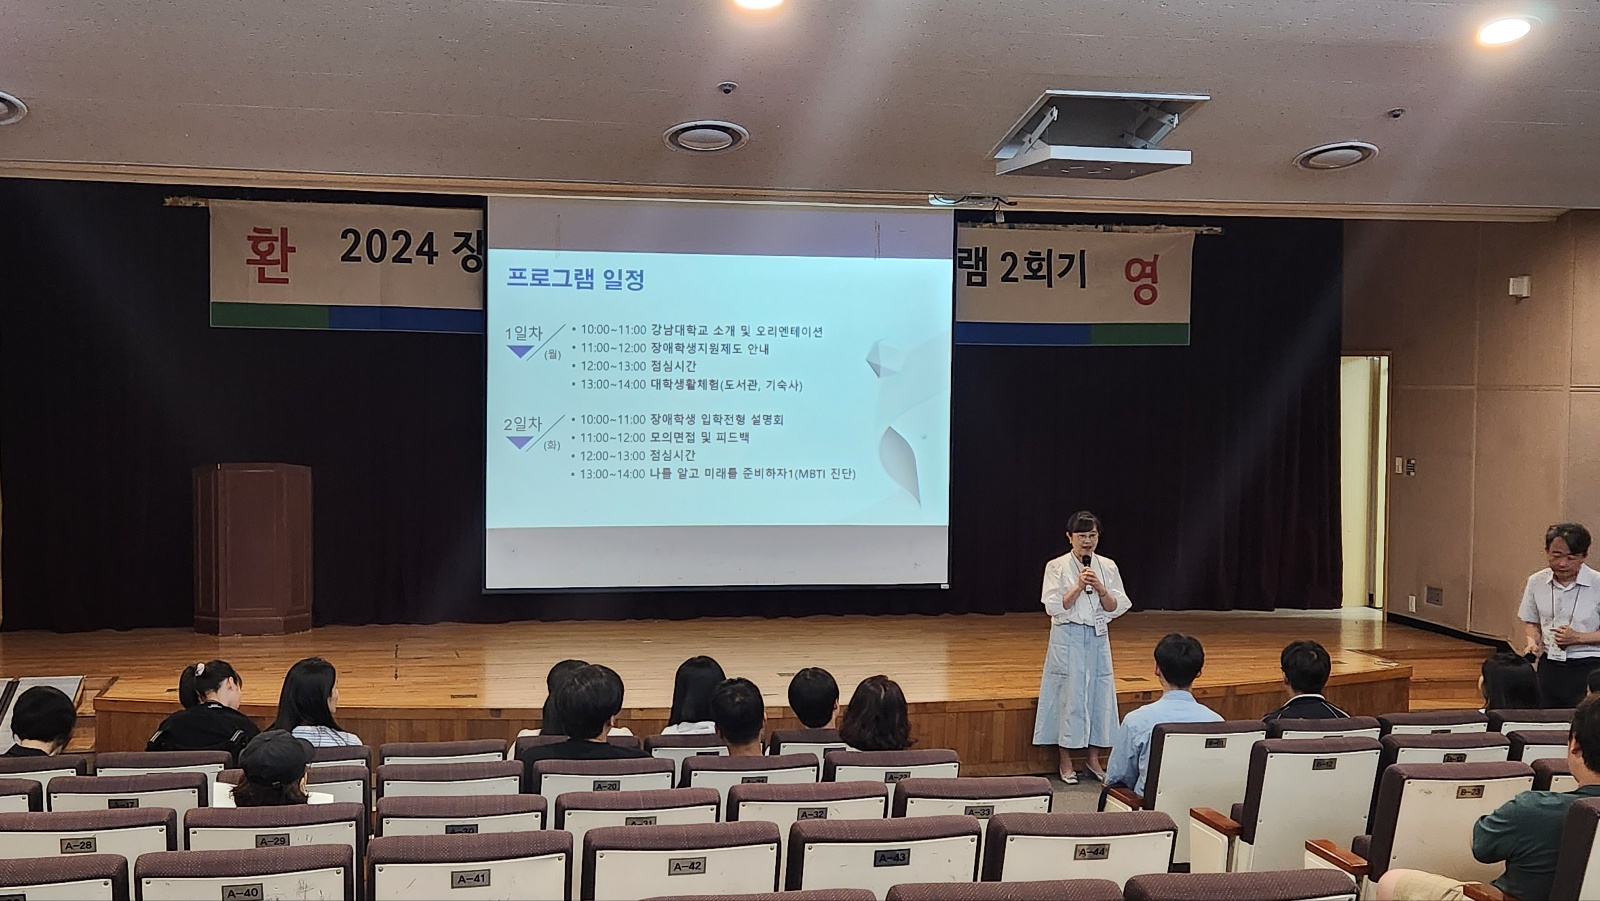 강남대학교 장애학생지원센터장(김호연)이 프로그램 일정을 안내하고 있다.